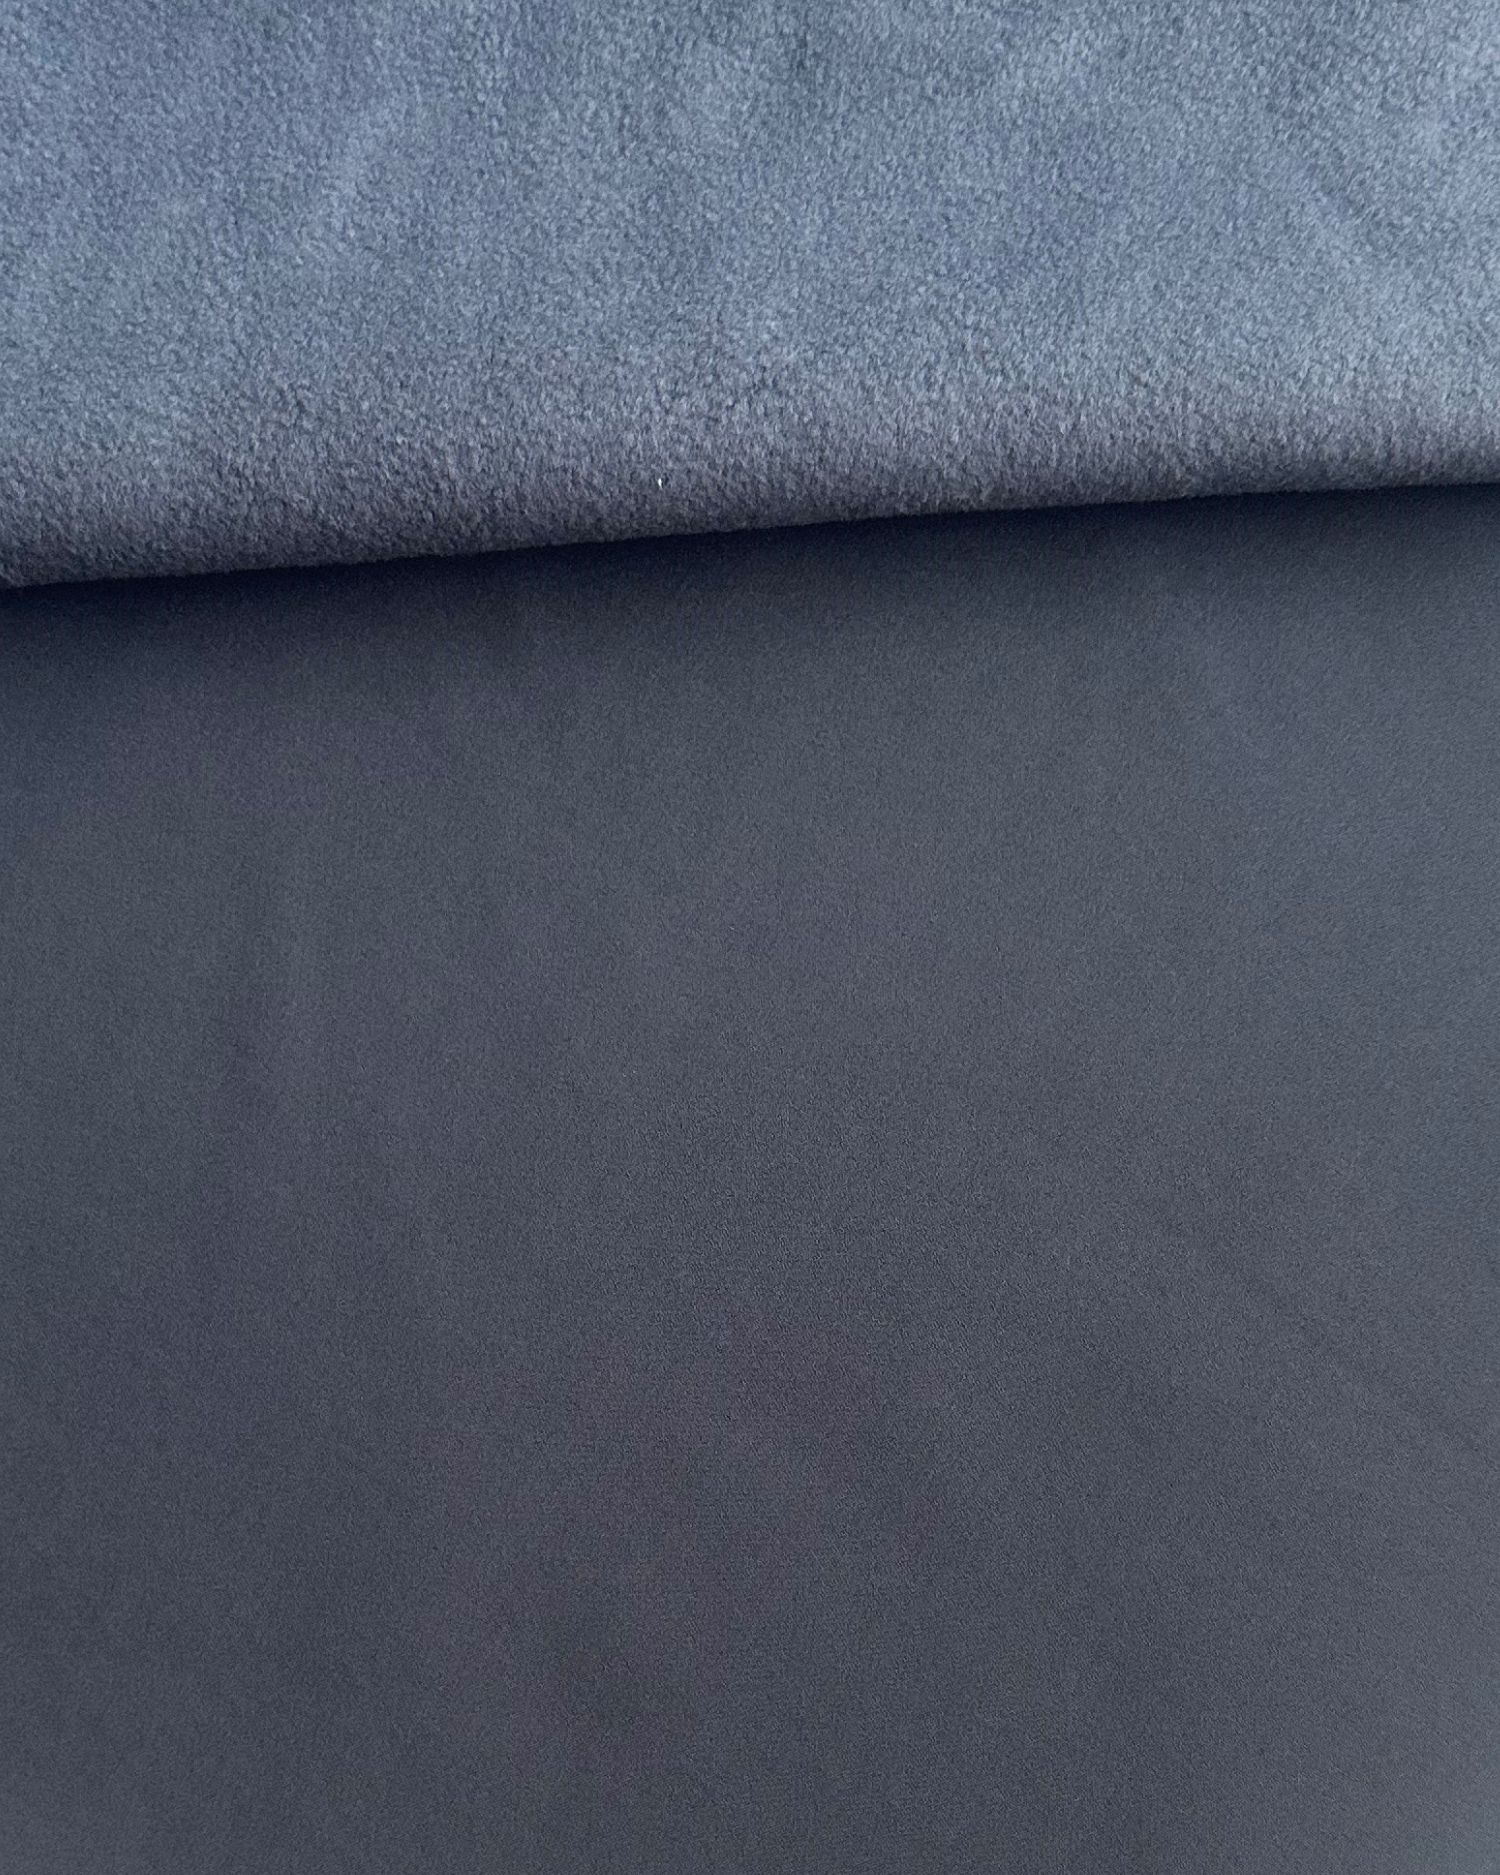 Zbytky metráže: Softshell zimní s fleecem, tmavě šedý (antracitový)